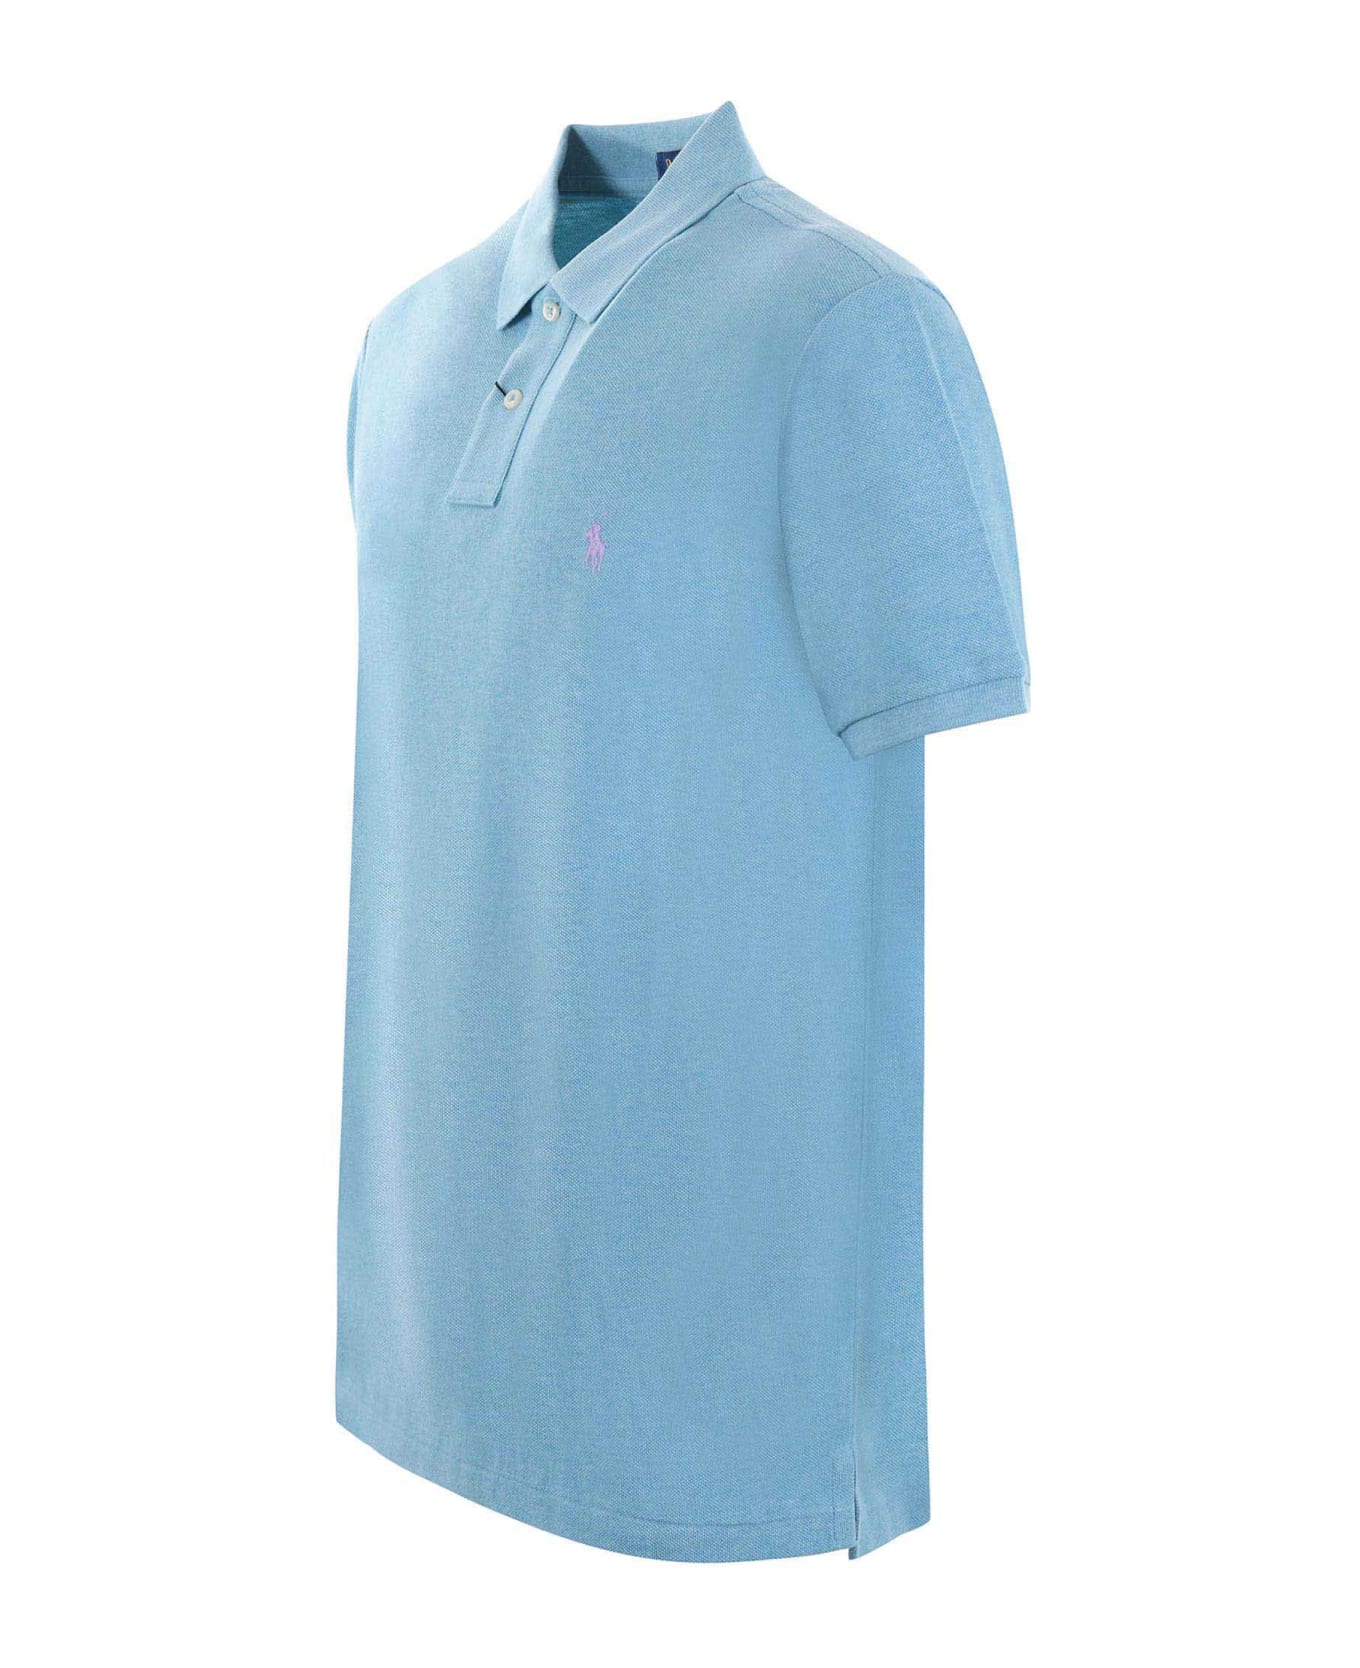 Polo Ralph Lauren "polo Ralph Lauren" Polo Shirt - Turchese ポロシャツ